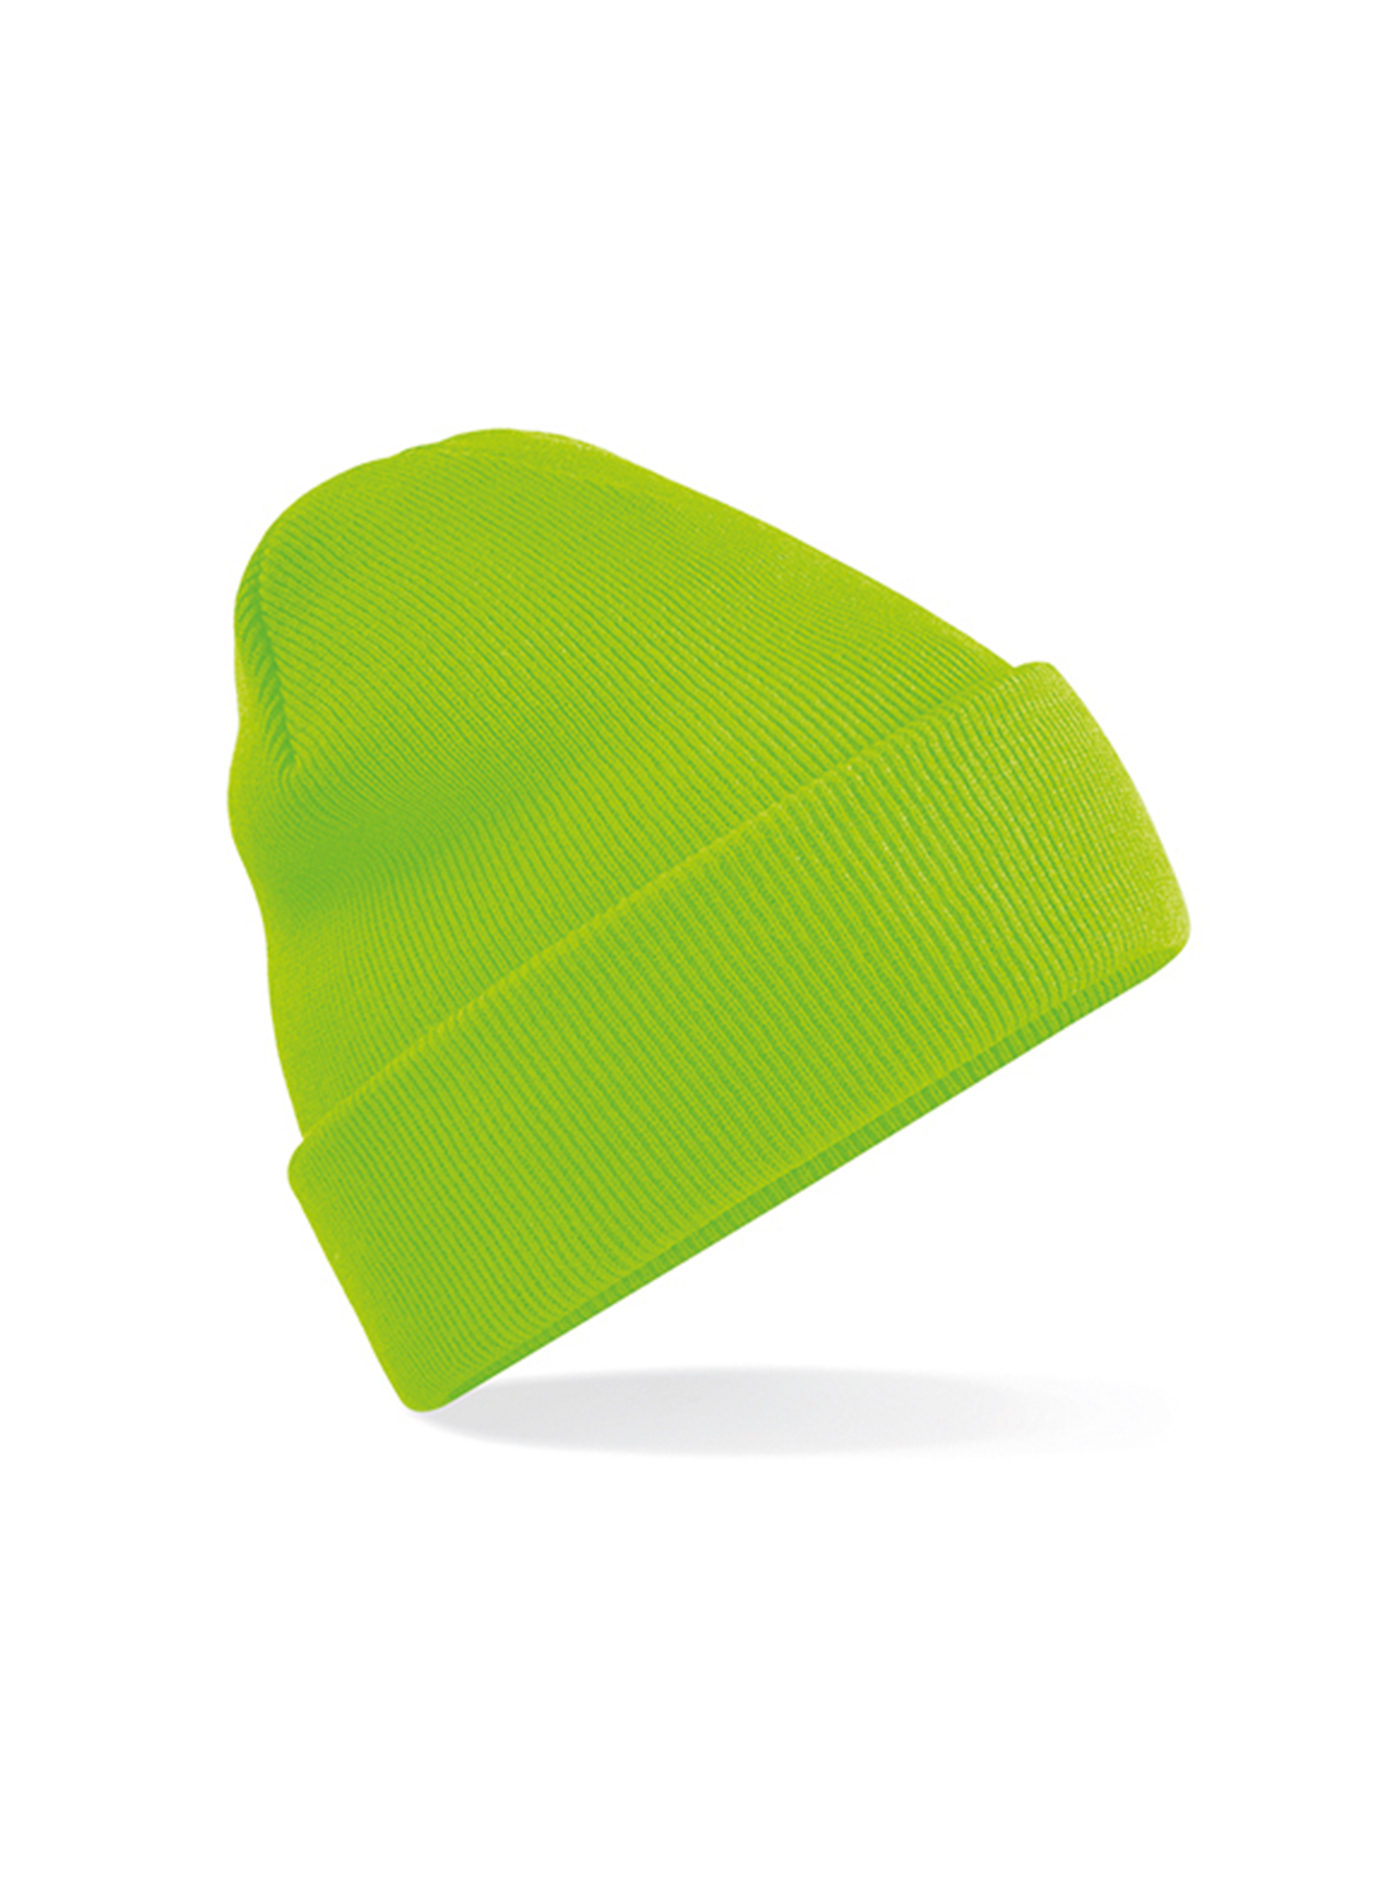 Čepice Cuffed - Neonová zelená univerzal